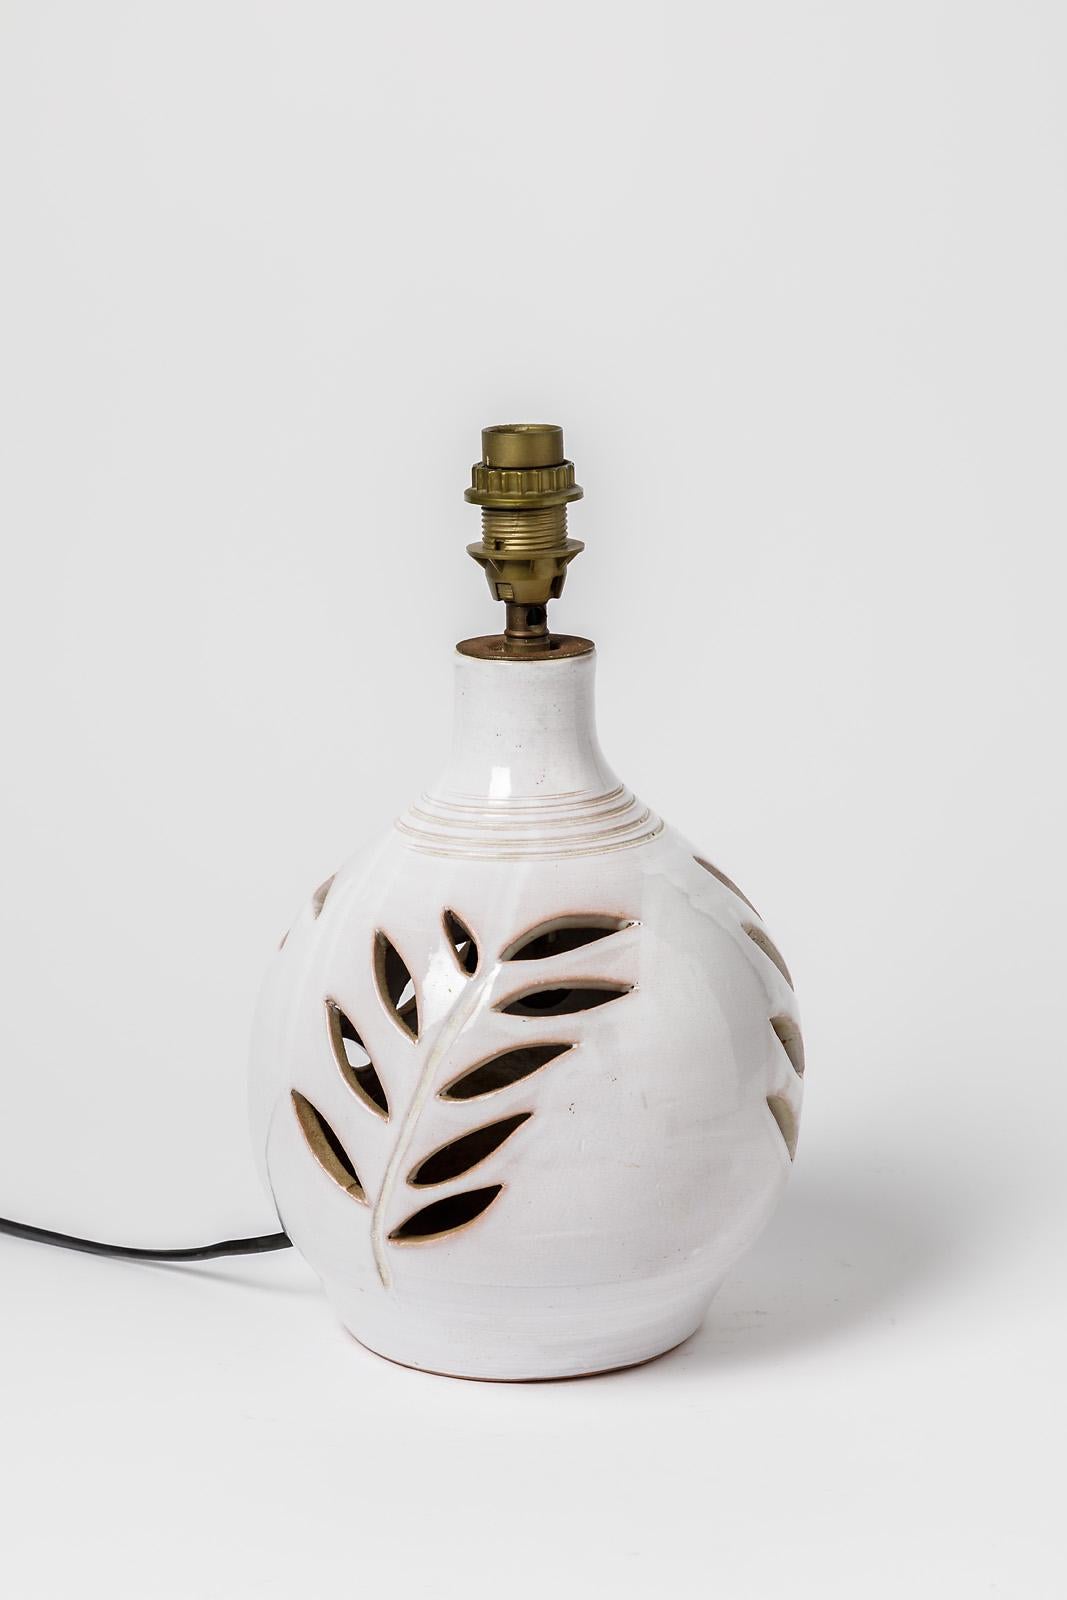 Tischlampe

Keramische Tischlampe mit weißer Keramikglasur Farbe

Elektrische Anlage ist in Ordnung

Original guter Zustand

Keramische Höhe 25 cm
Groß 18 cm
Höhe mit elektrischem System 32 cm.